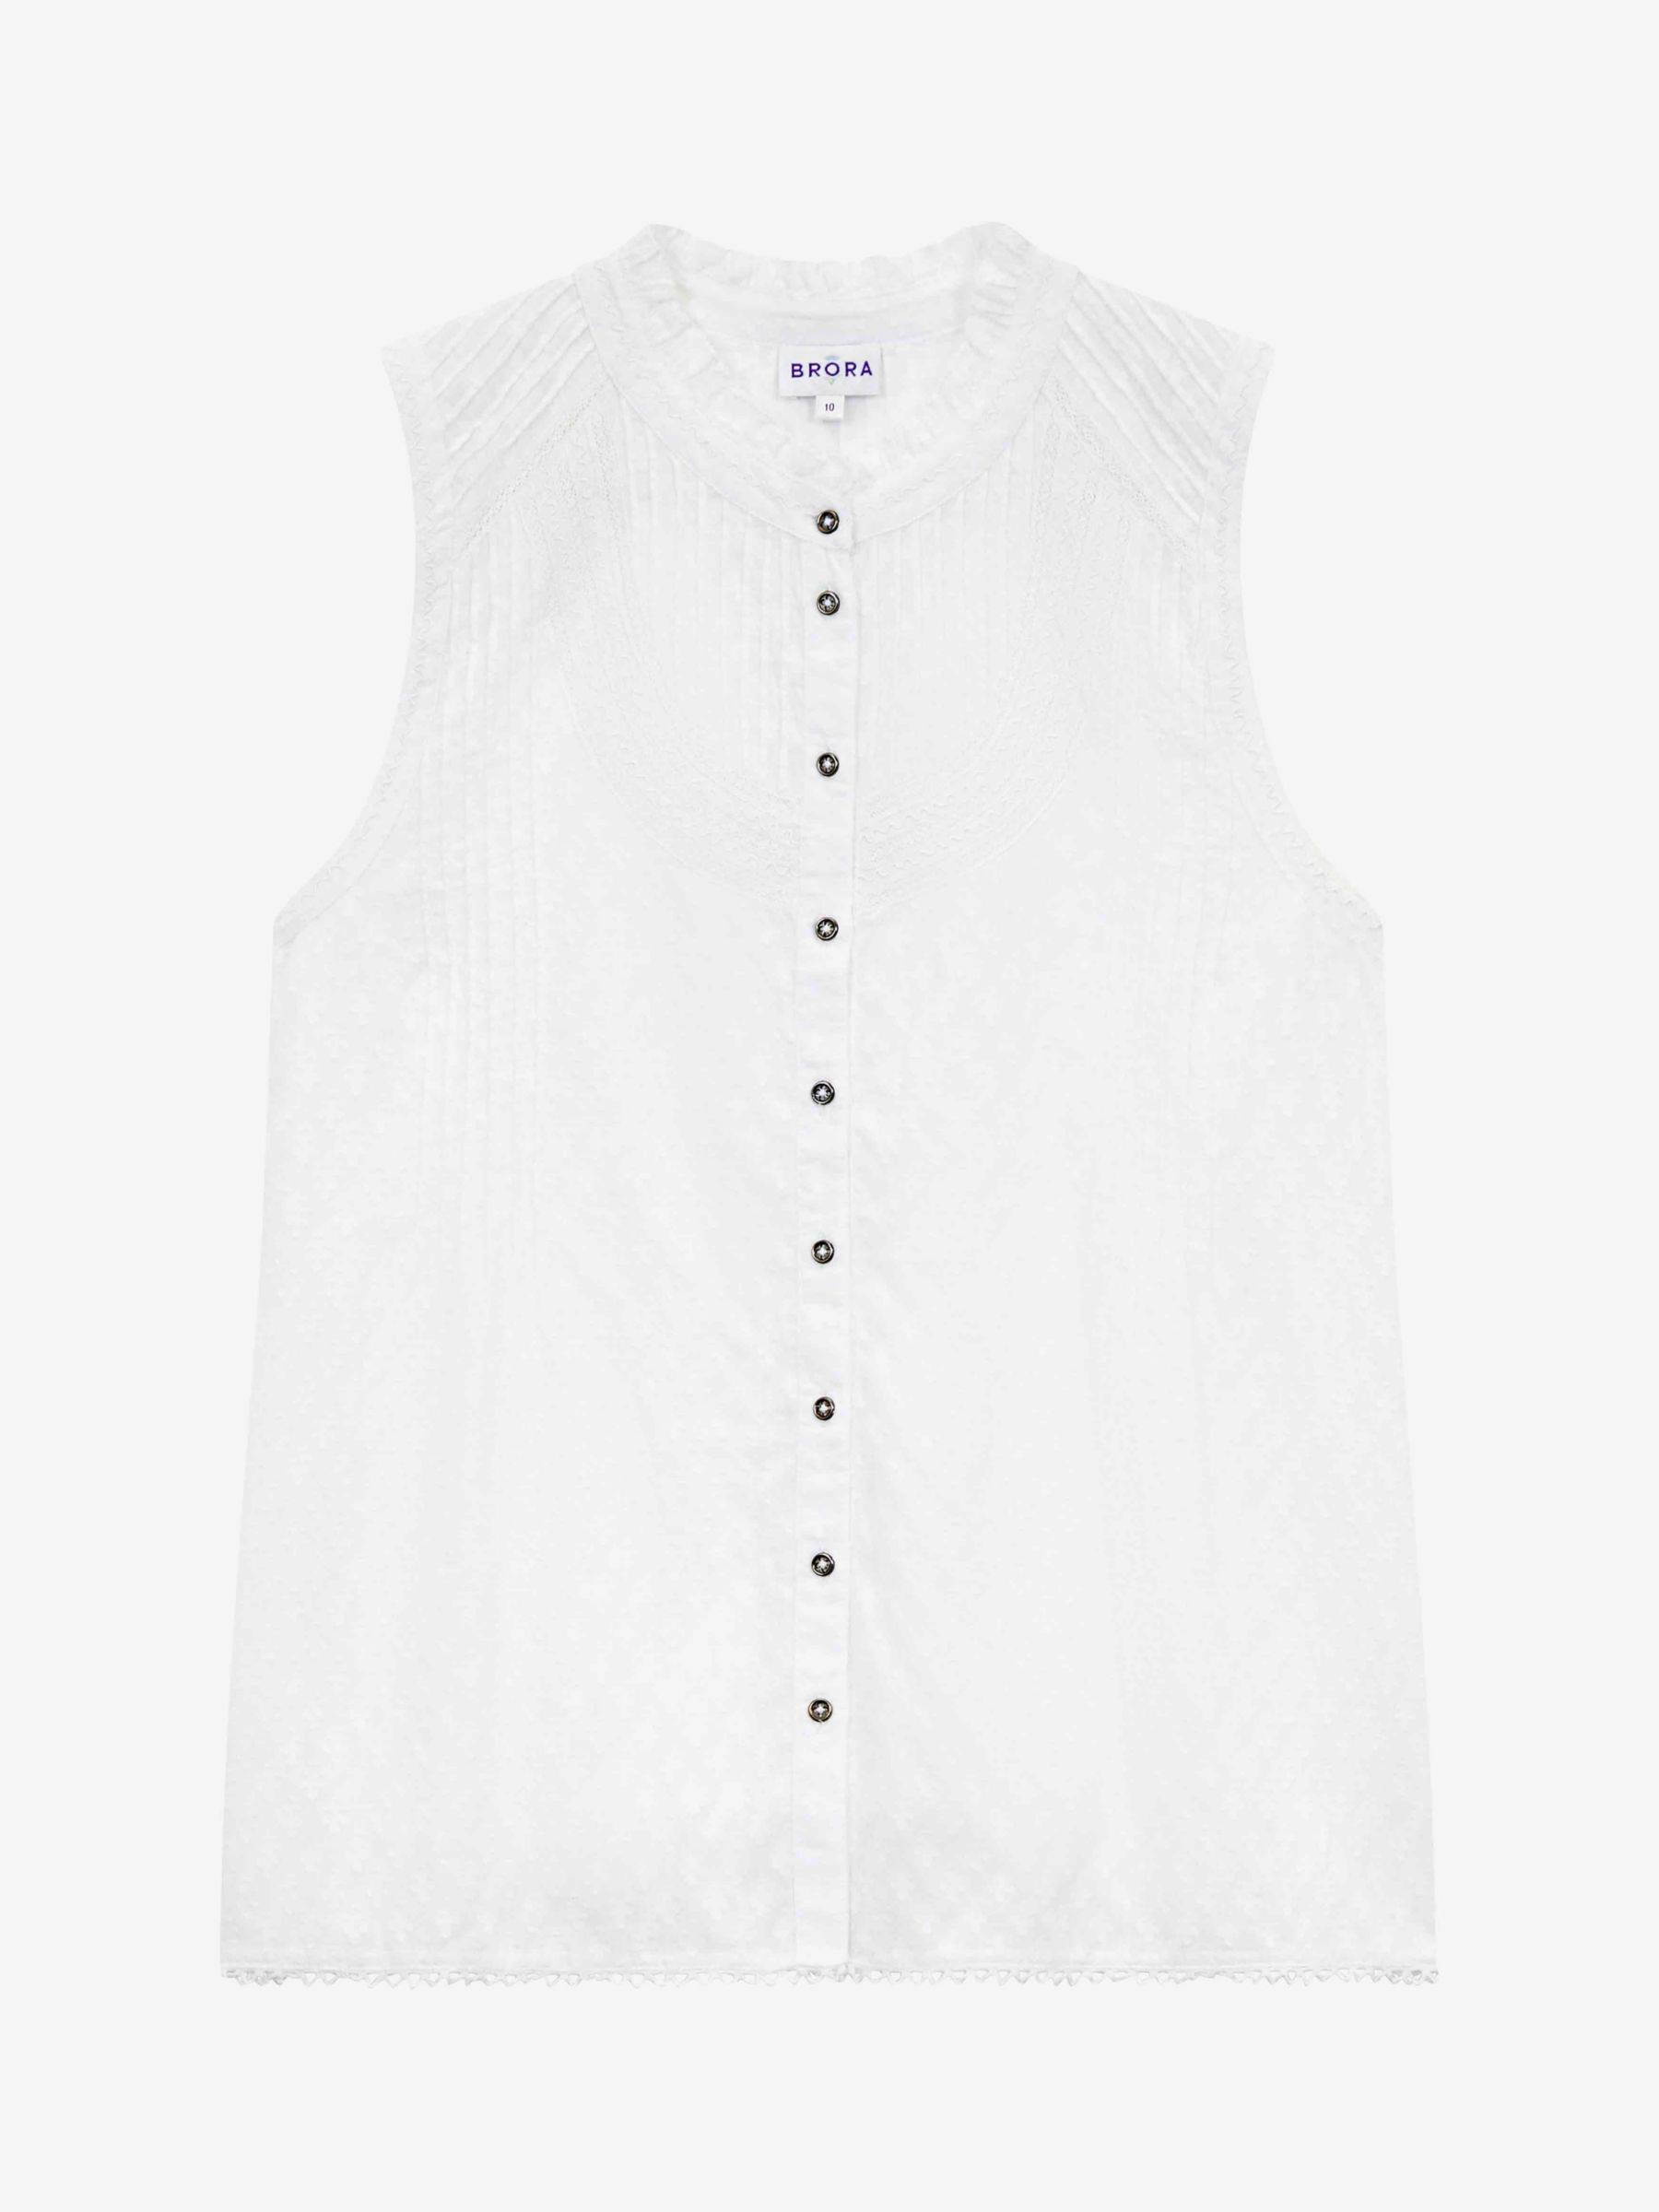 Brora Textured Organic Cotton Sleeveless Blouse, White, 6